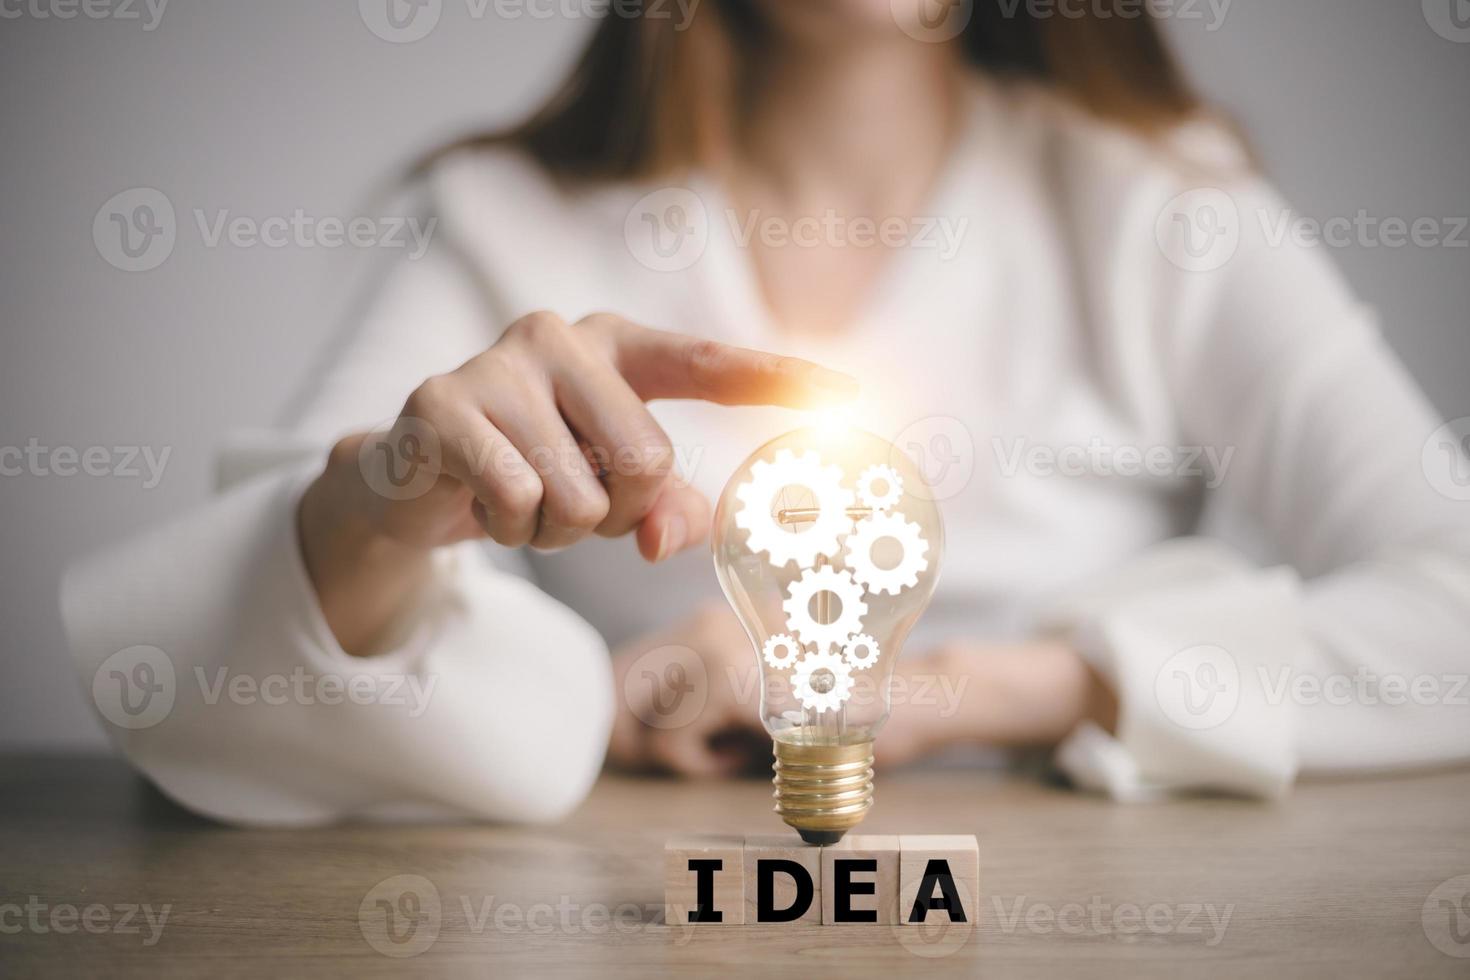 mão tocando na lâmpada no bloco de madeira com ideia de palavra, novo conceito de ideia com inovação e inspiração, tecnologia inovadora no conceito de ciência e comunicação. foto